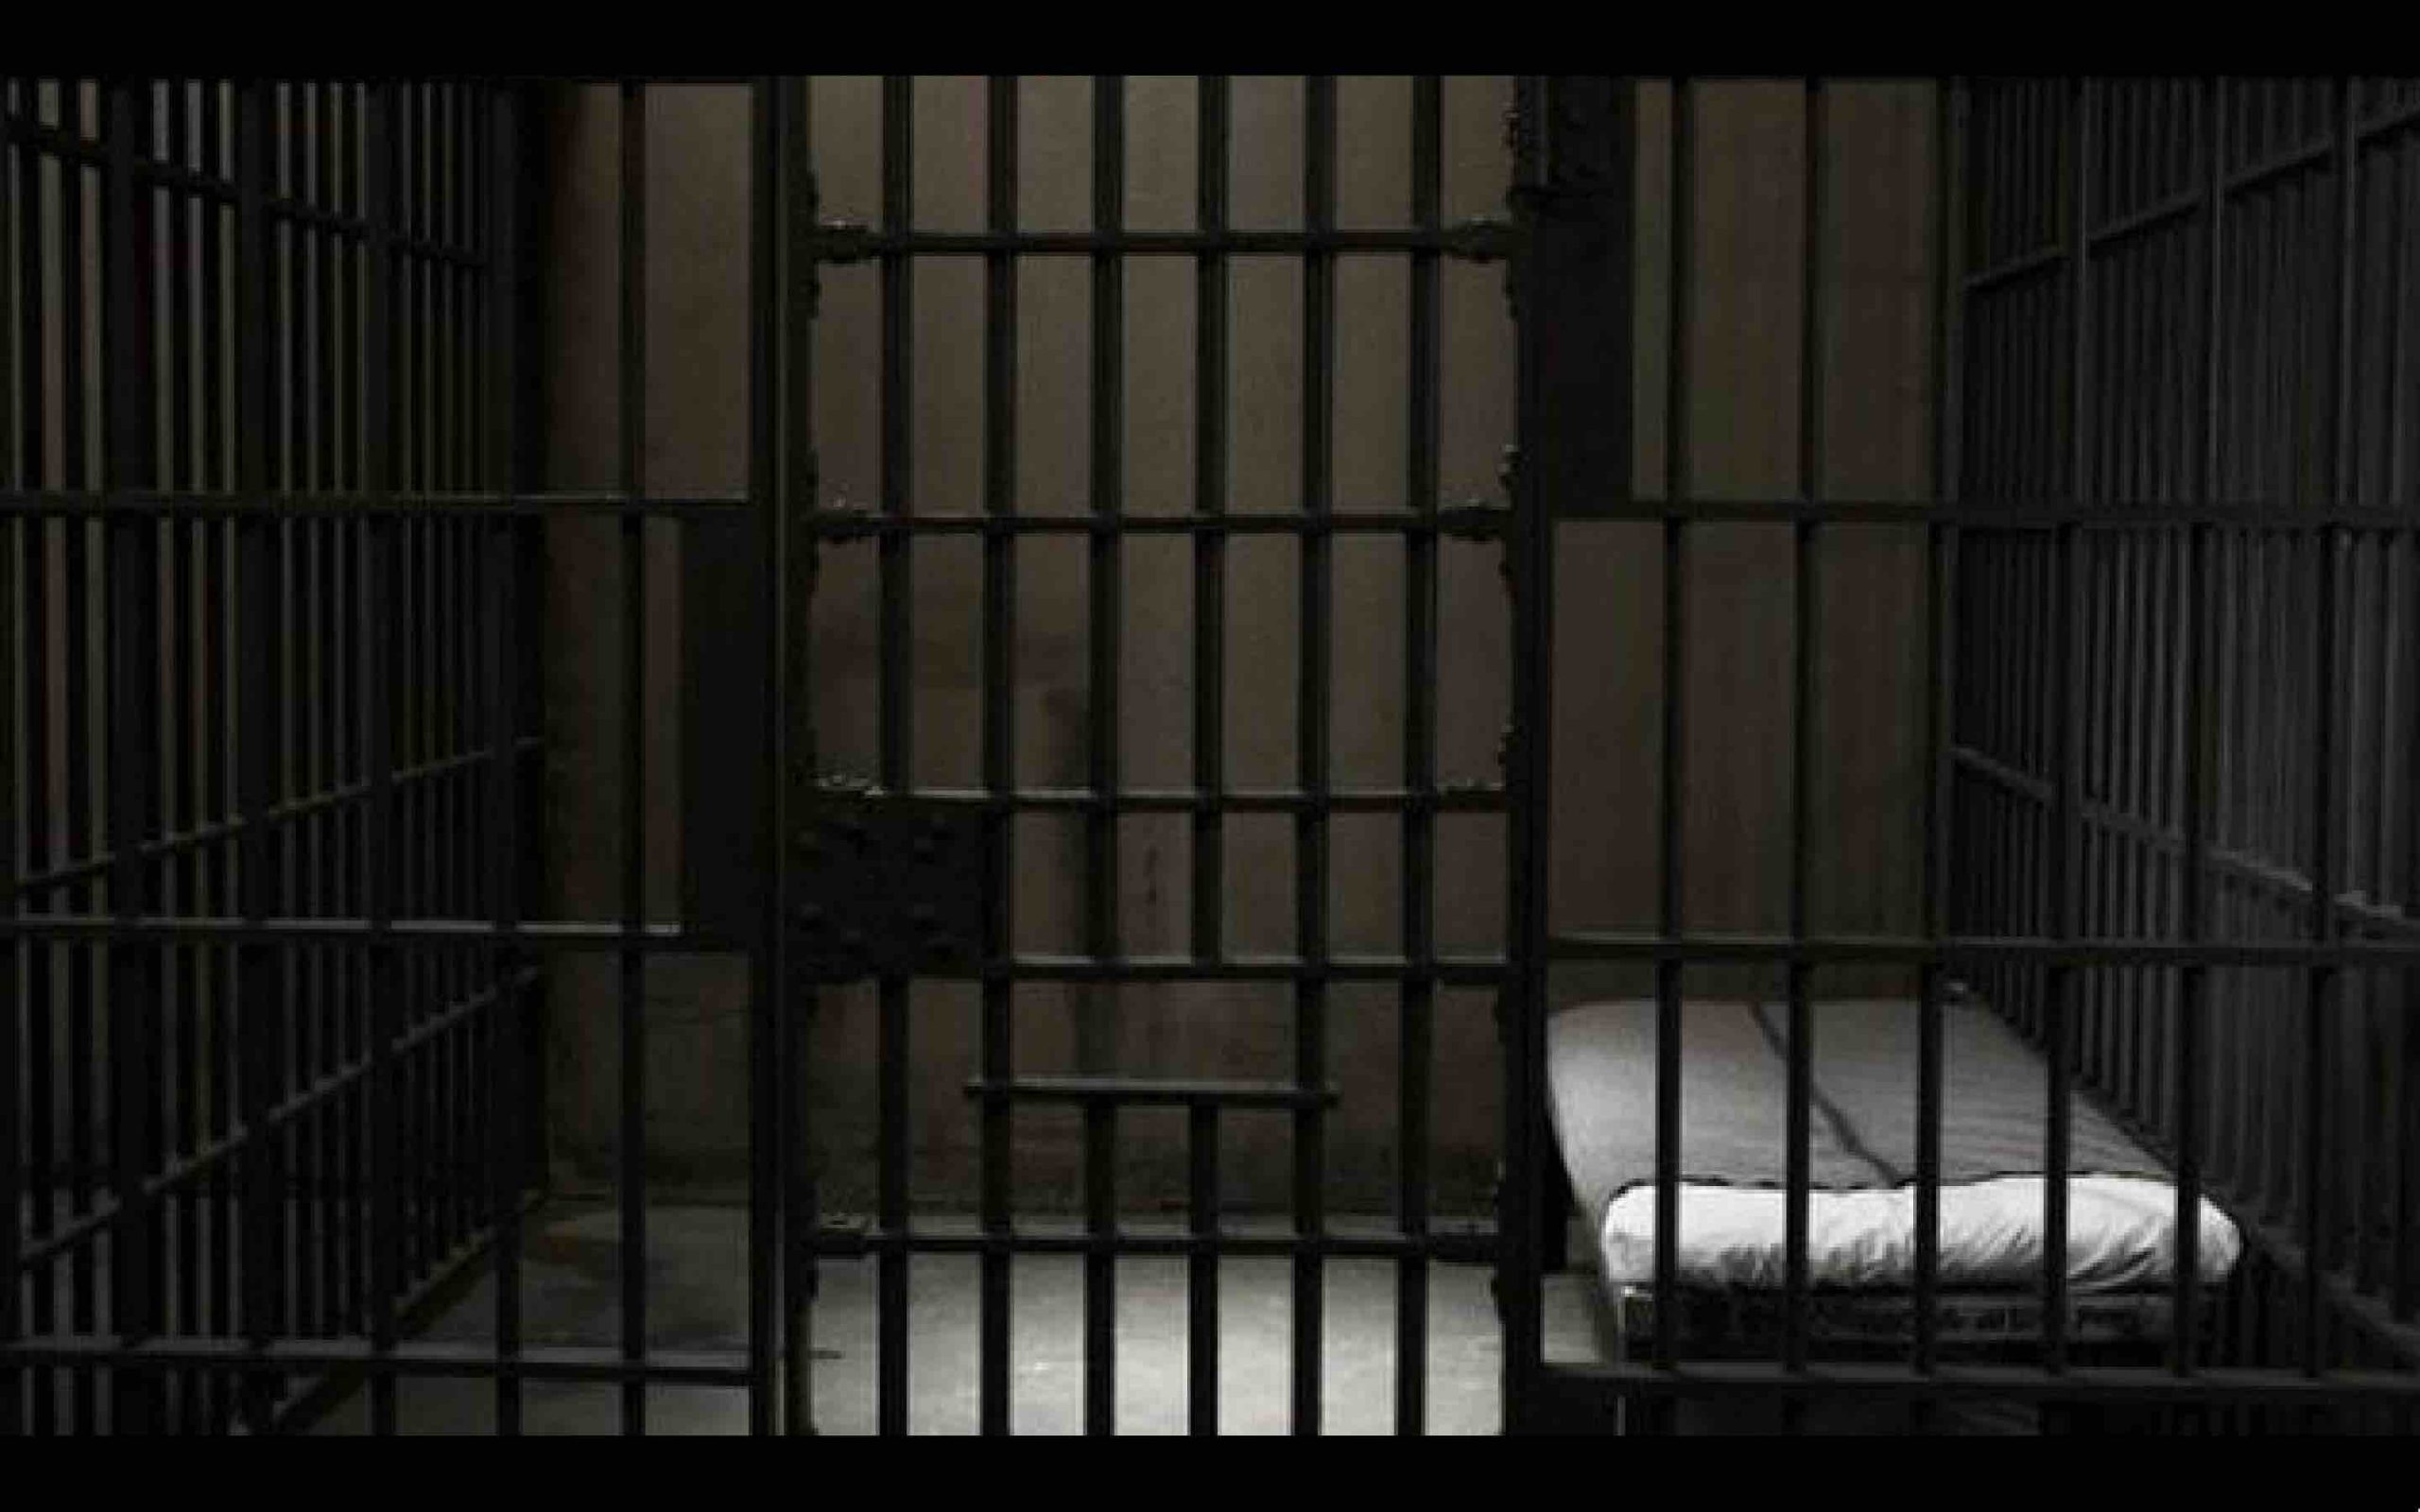 cellule prison Maroc jail Morocco